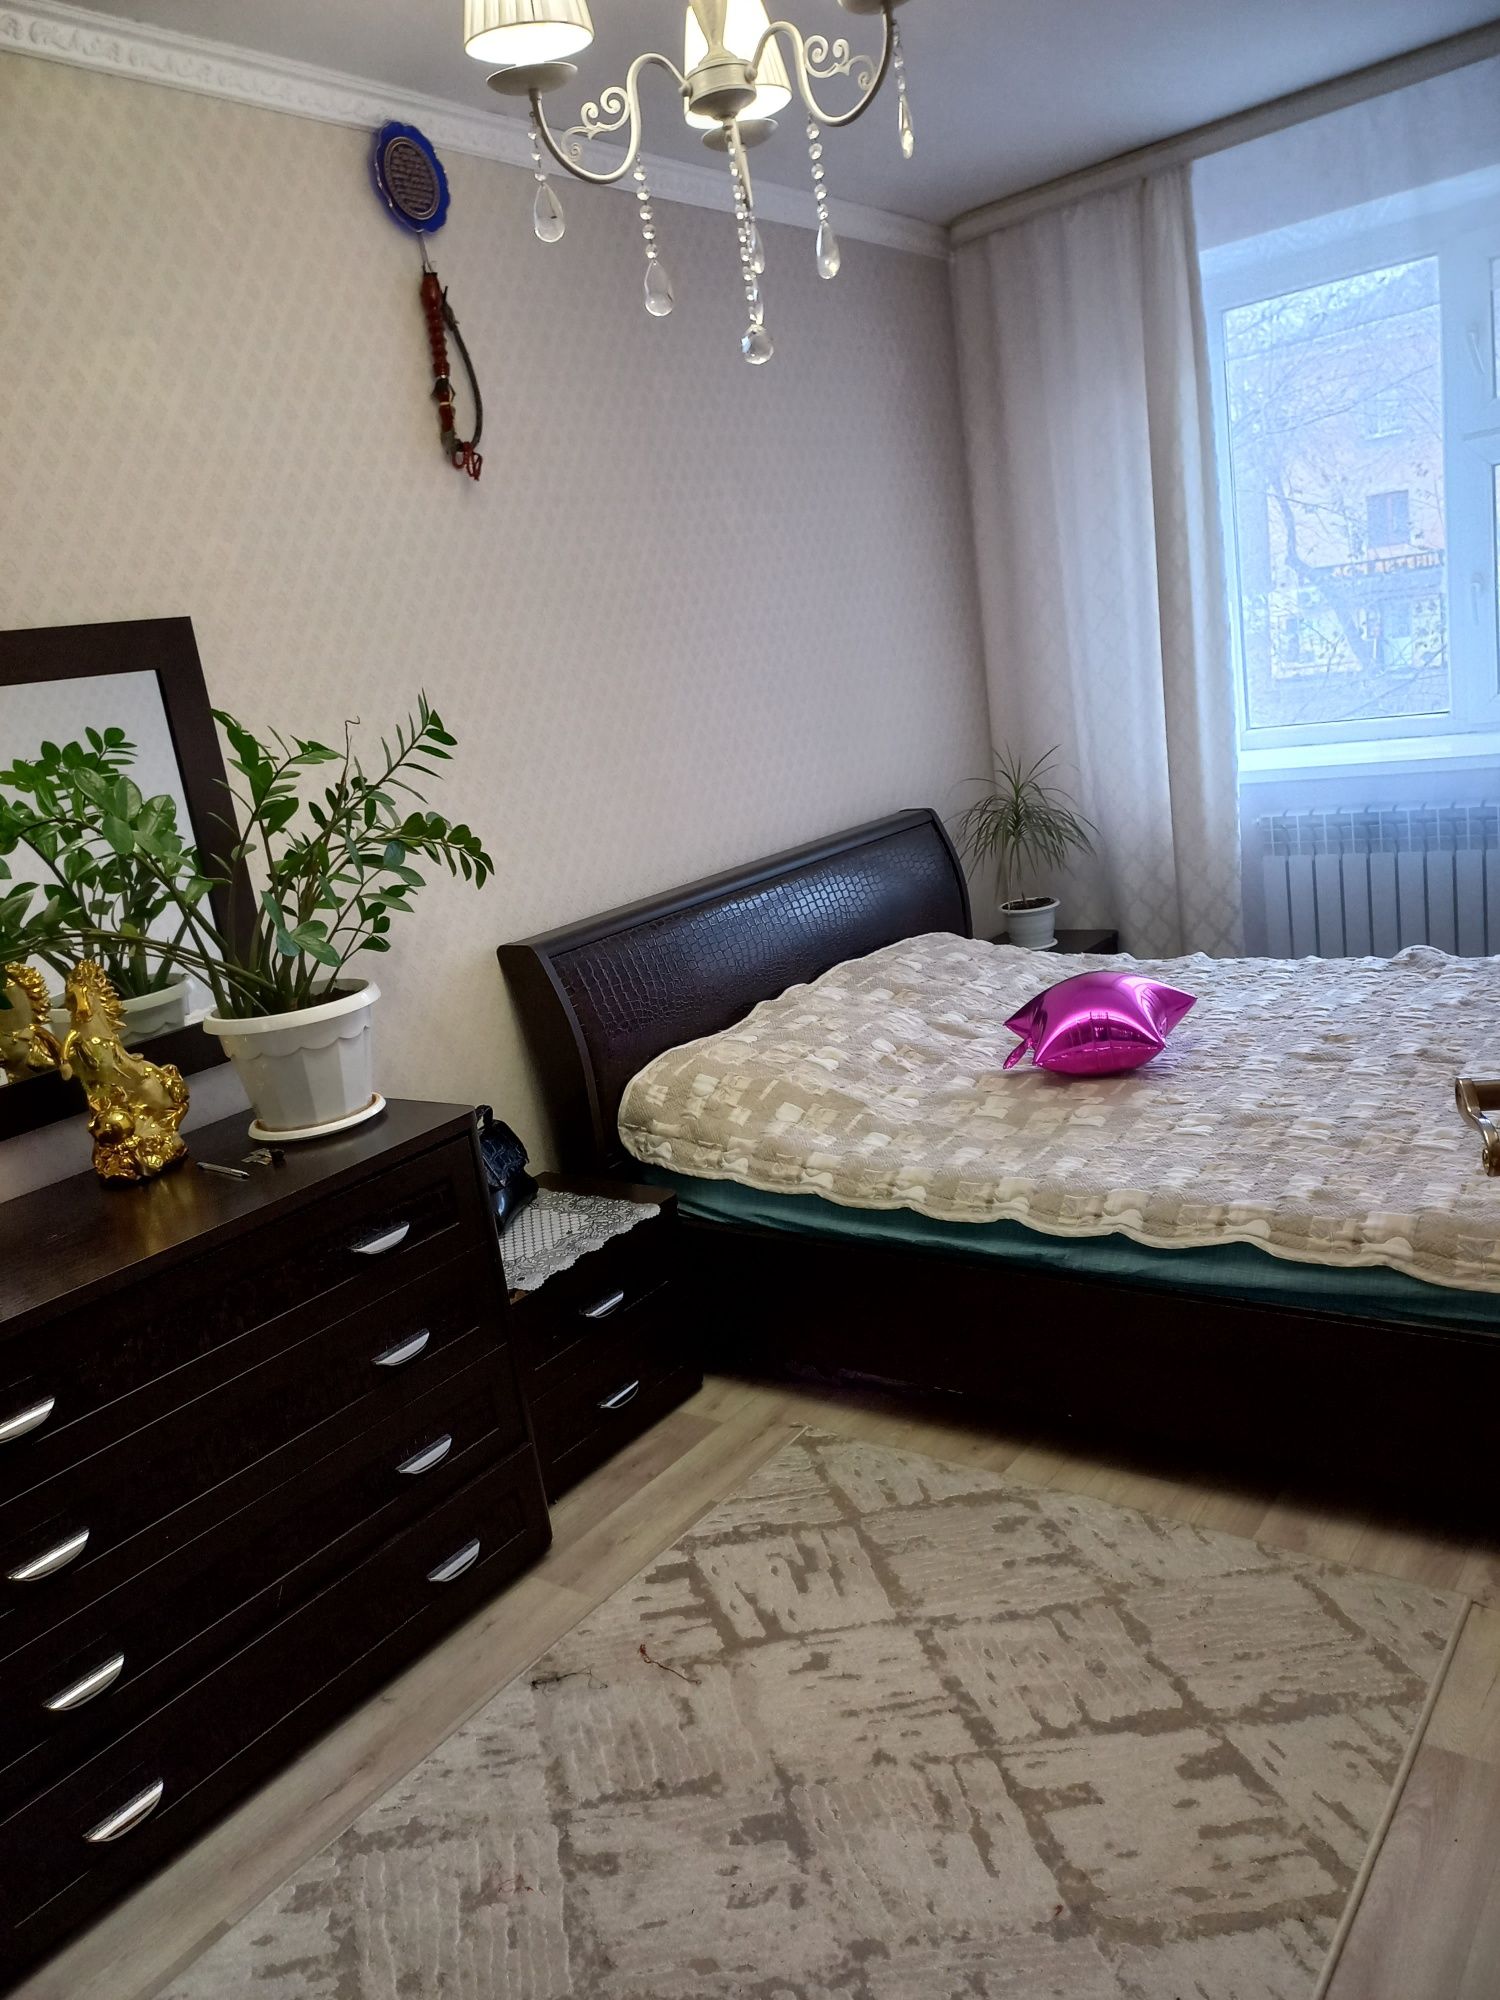 Продам спальный гарнитур ,производство Москва  за 250 тысячи тенге.